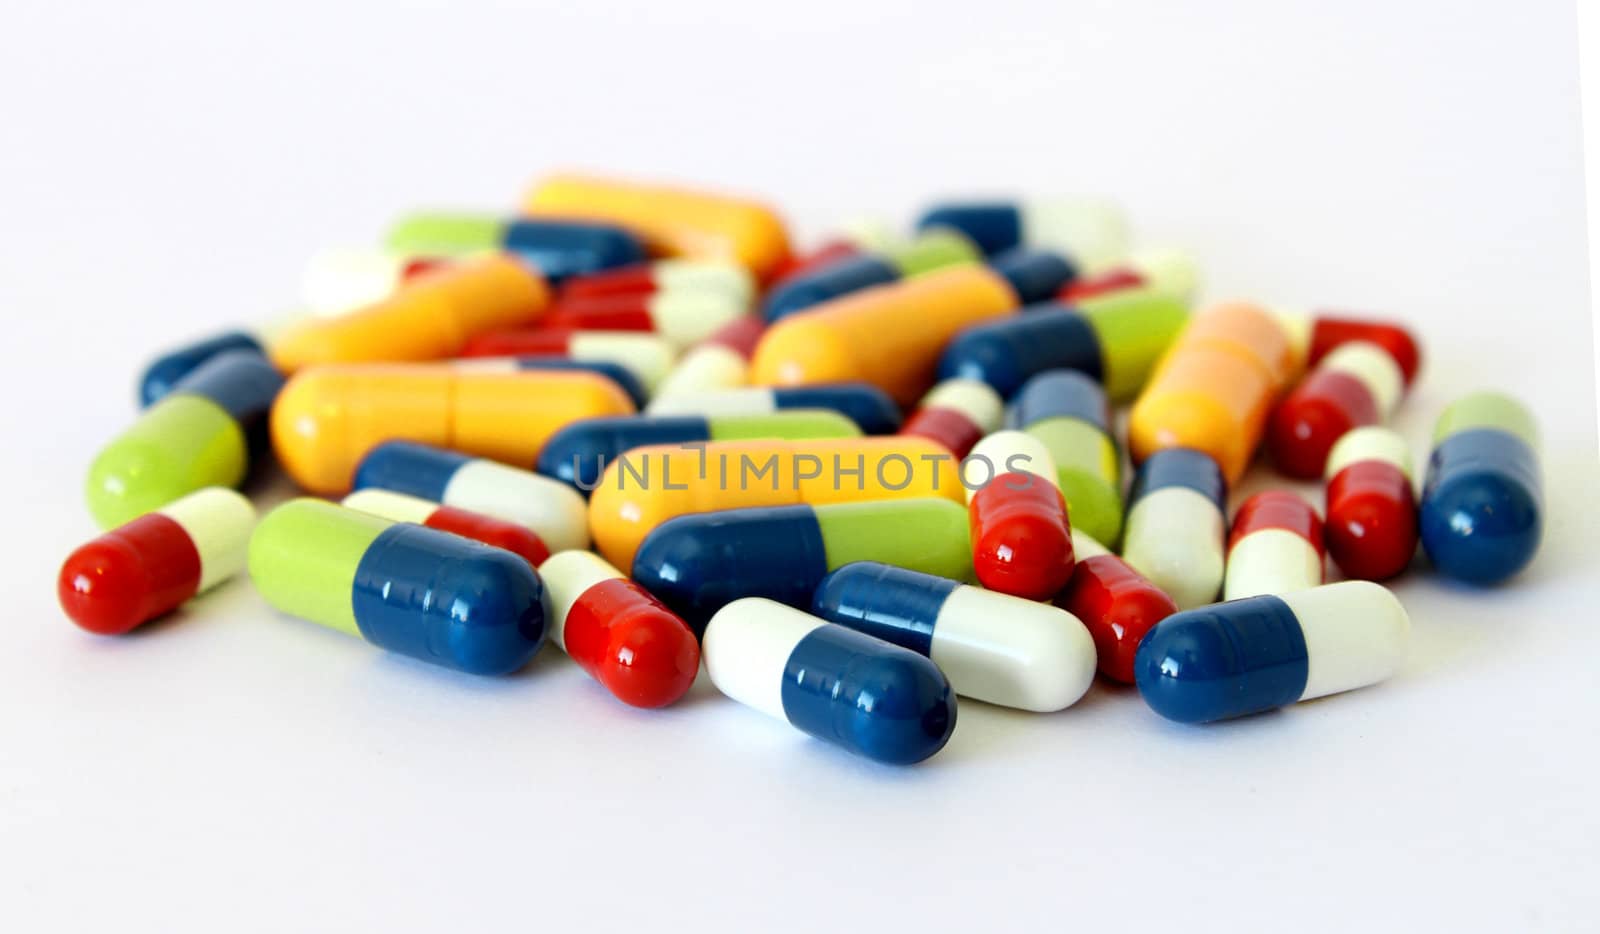 Colorful drugs pills capsules by anterovium